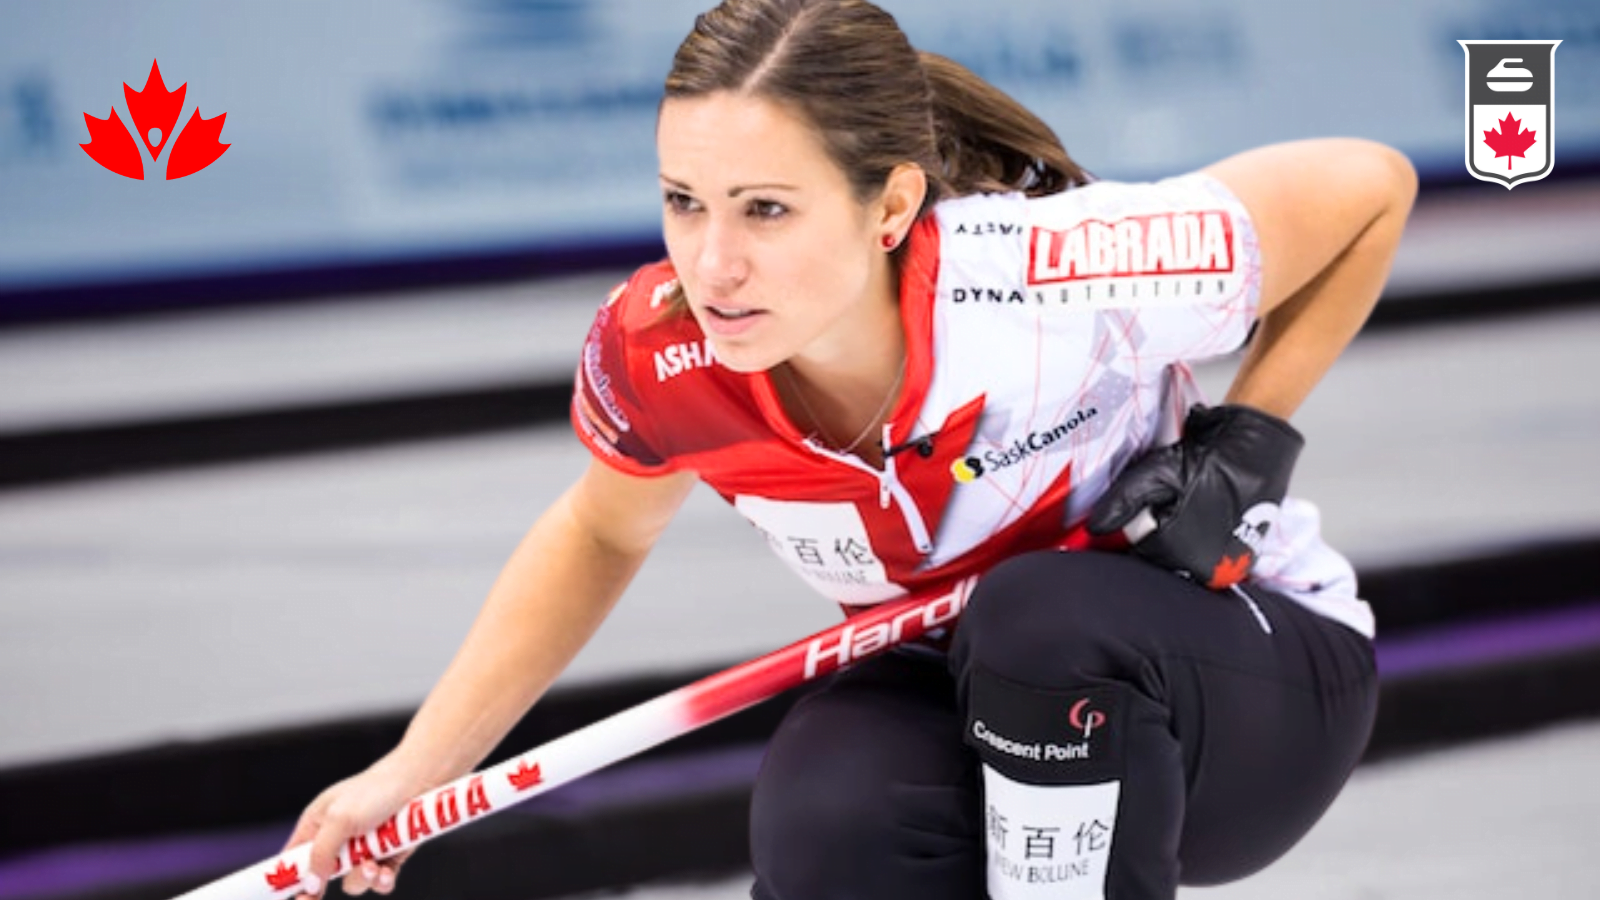 Athlete Rep Spotlight: Laura Walker, Curling